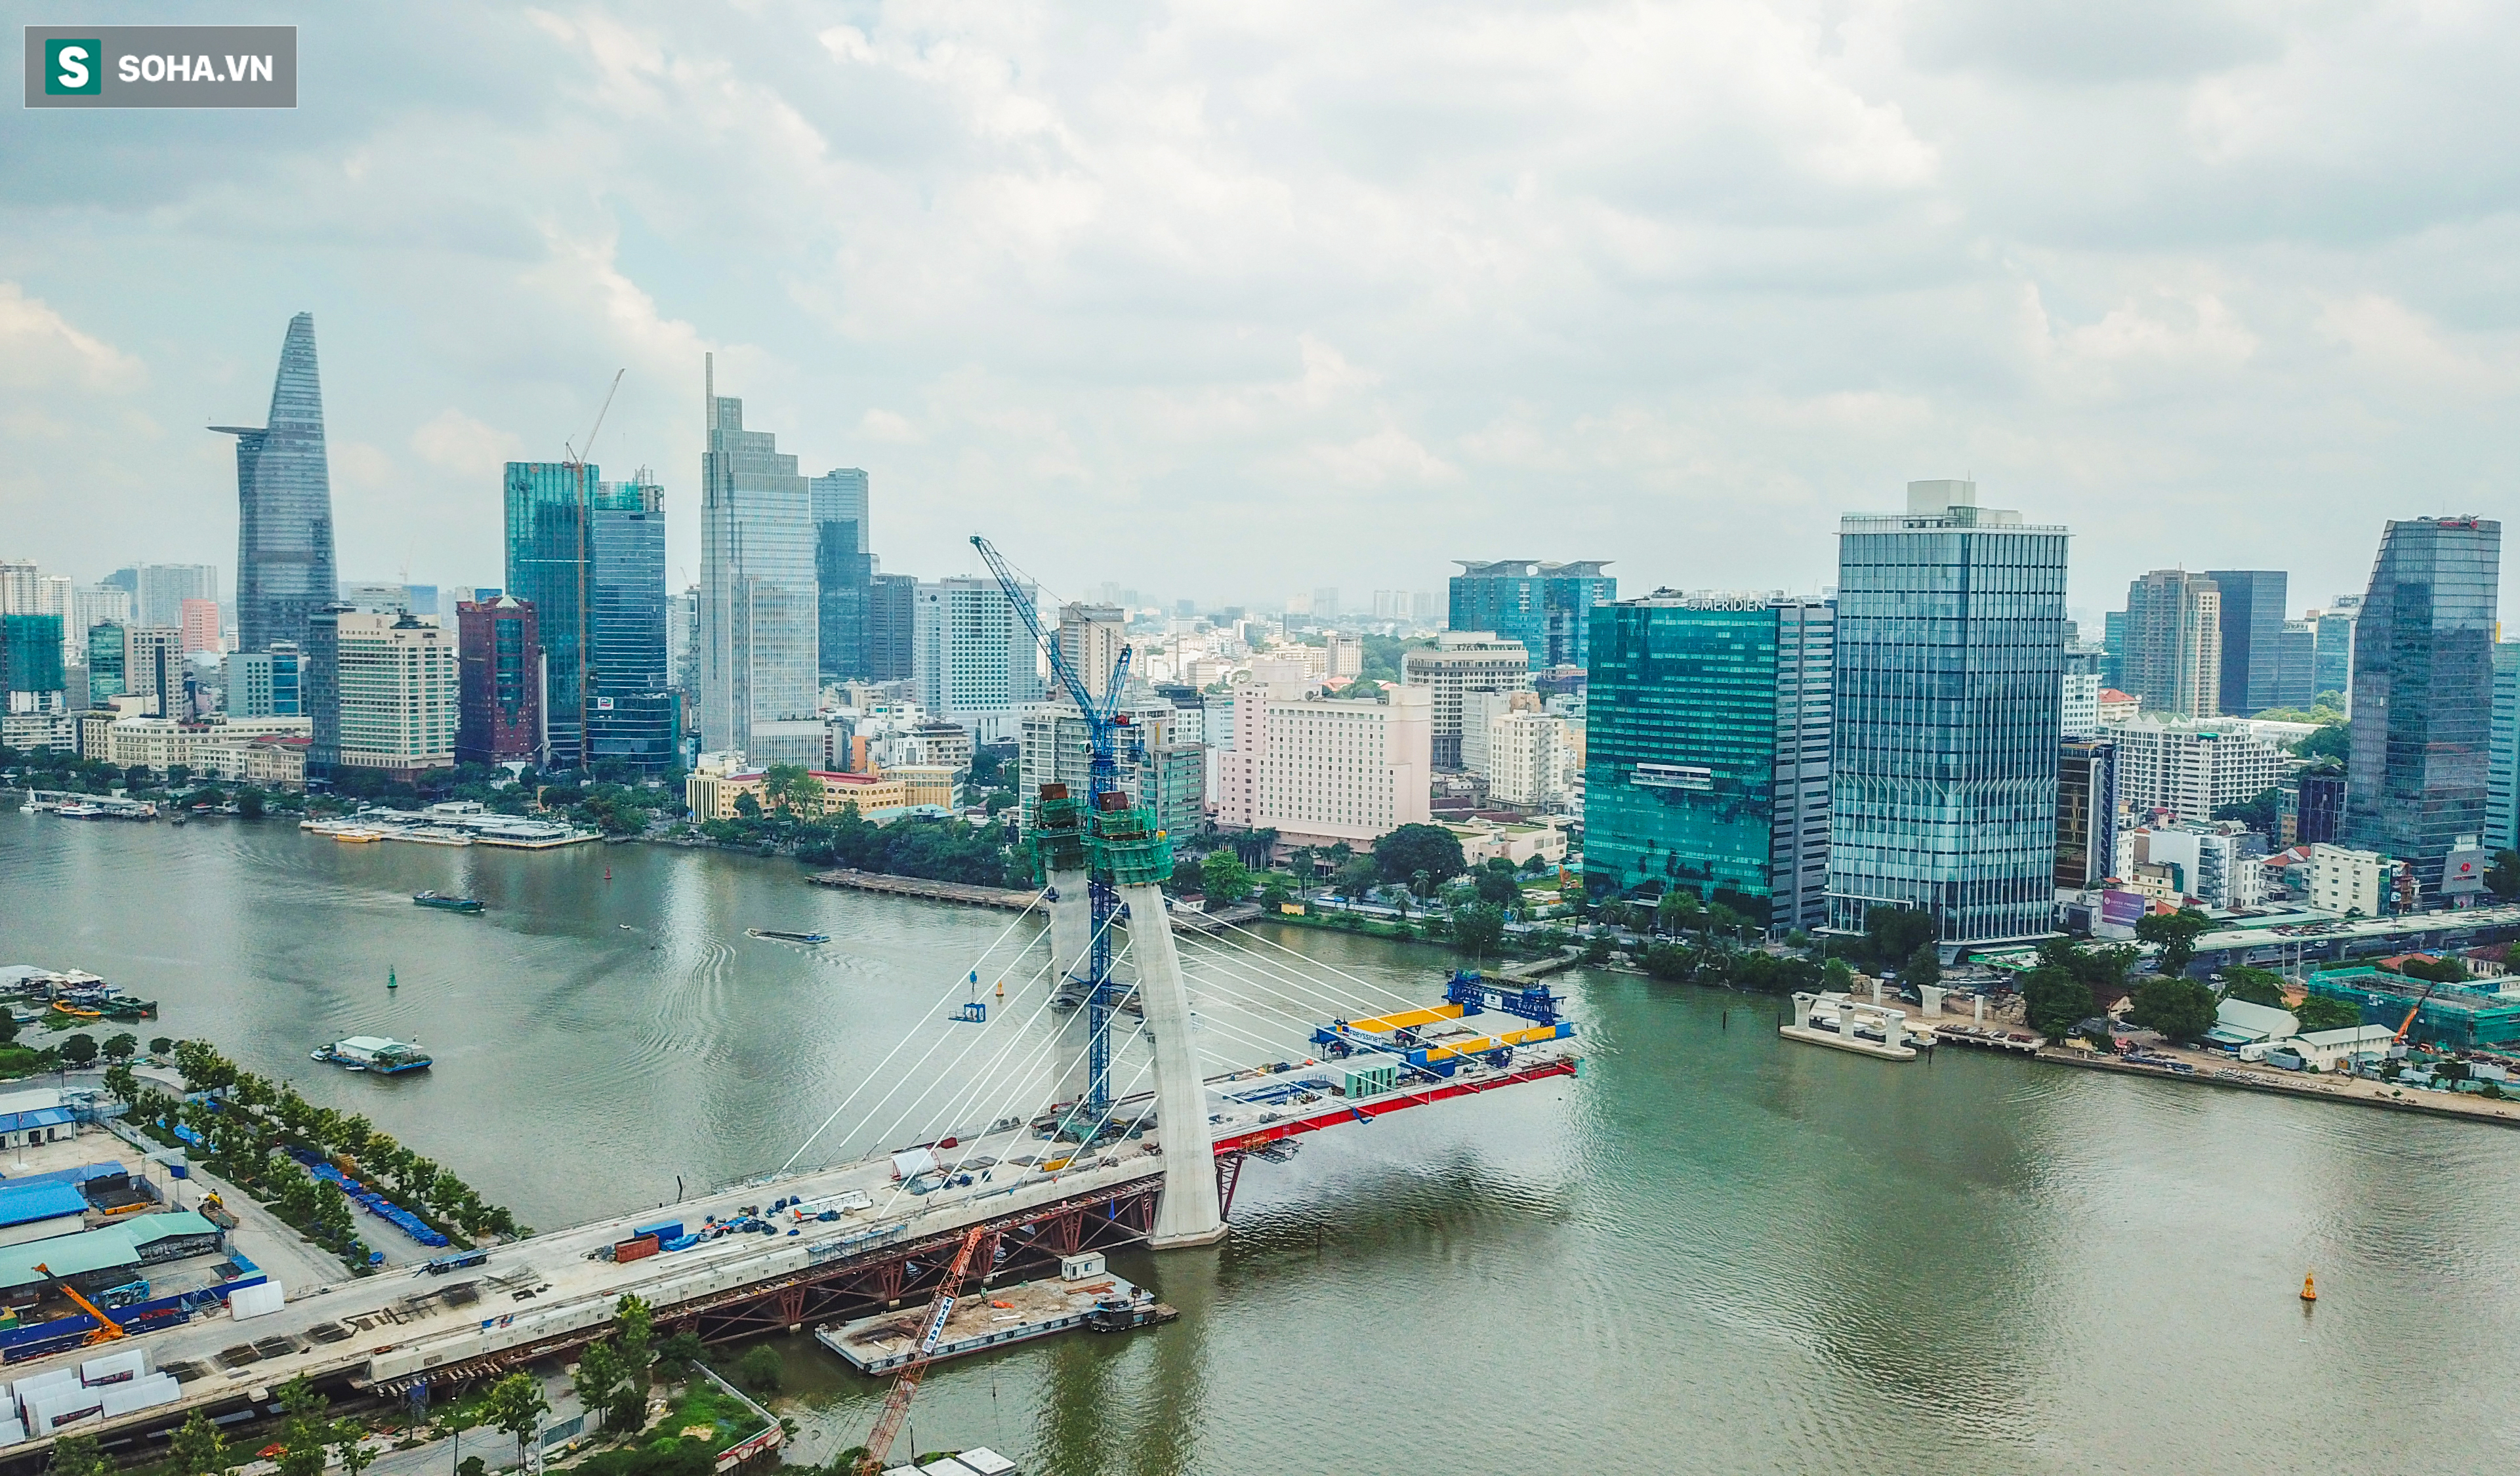 Cầu Thủ Thiêm 2 vươn mình ra sông Sài Gòn, lộ hình dáng khi nhìn từ trên cao - Ảnh 17.